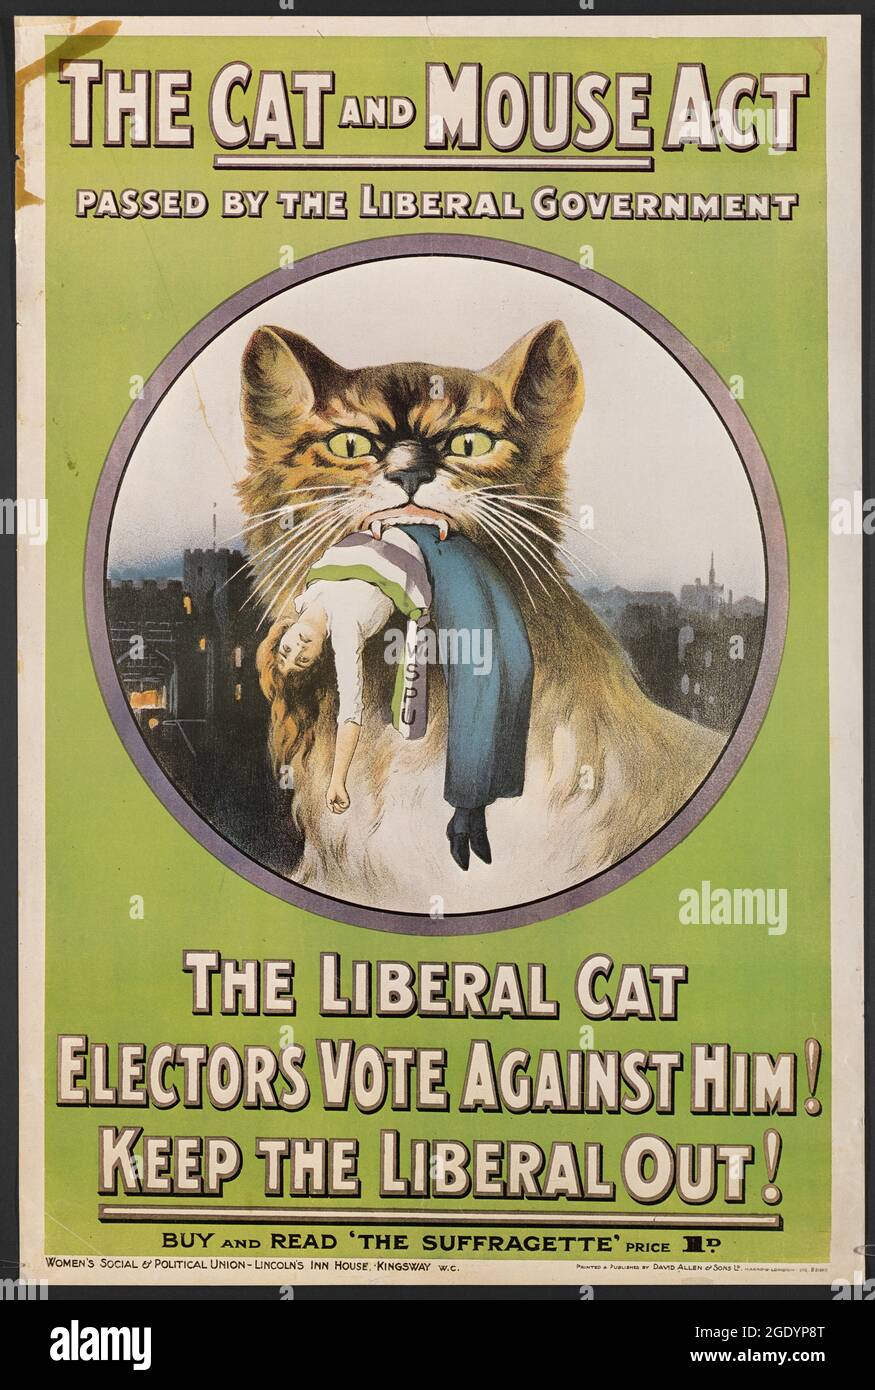 La loi sur le chat et la souris adoptée par le gouvernement libéral... acheter et lire la suffragette. Banque D'Images